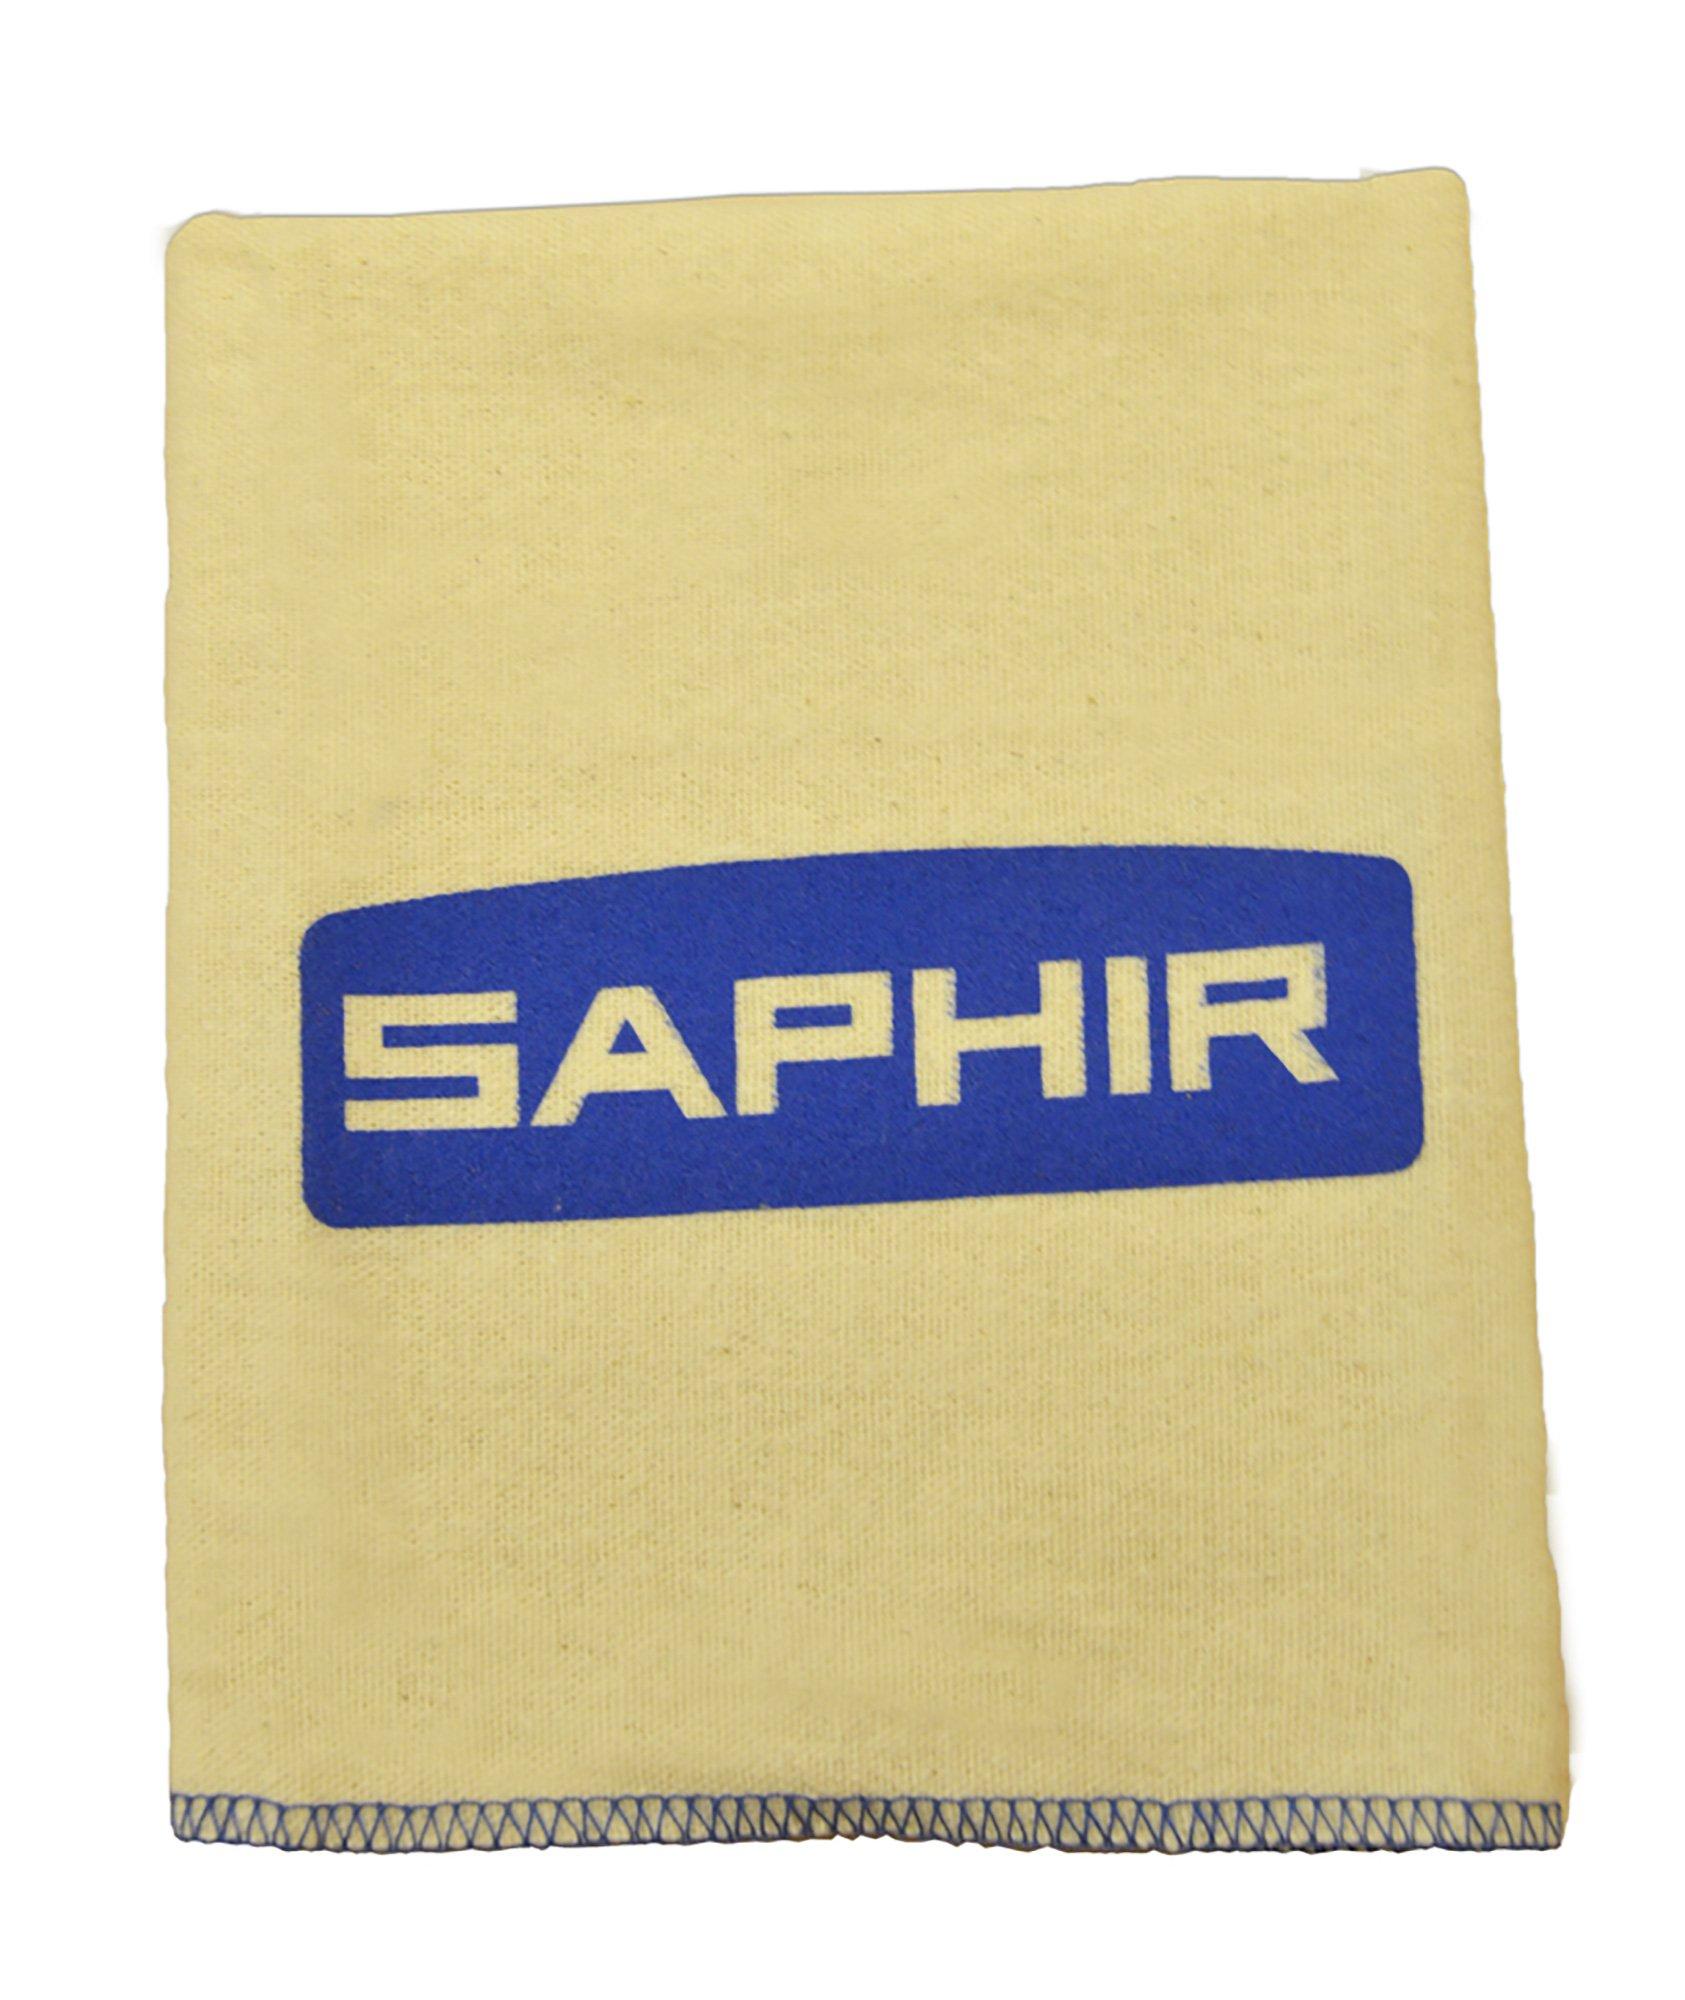 Chamoisine Saphir en coton pour l'entretien du cuir